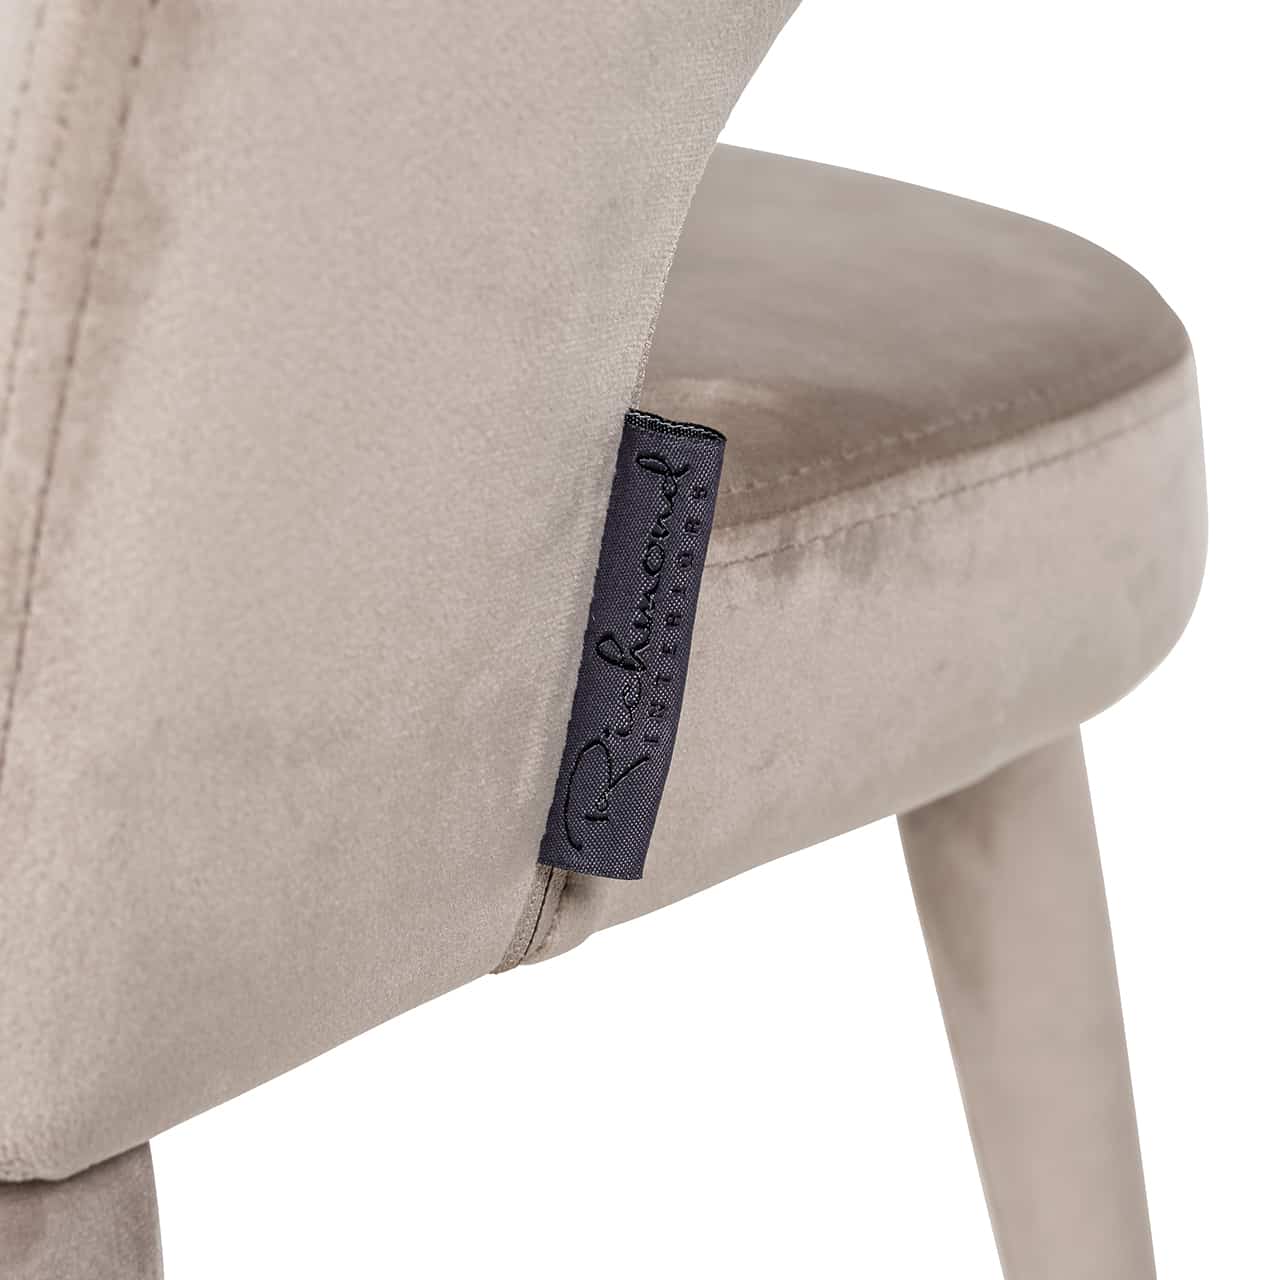 TURIN chair beige